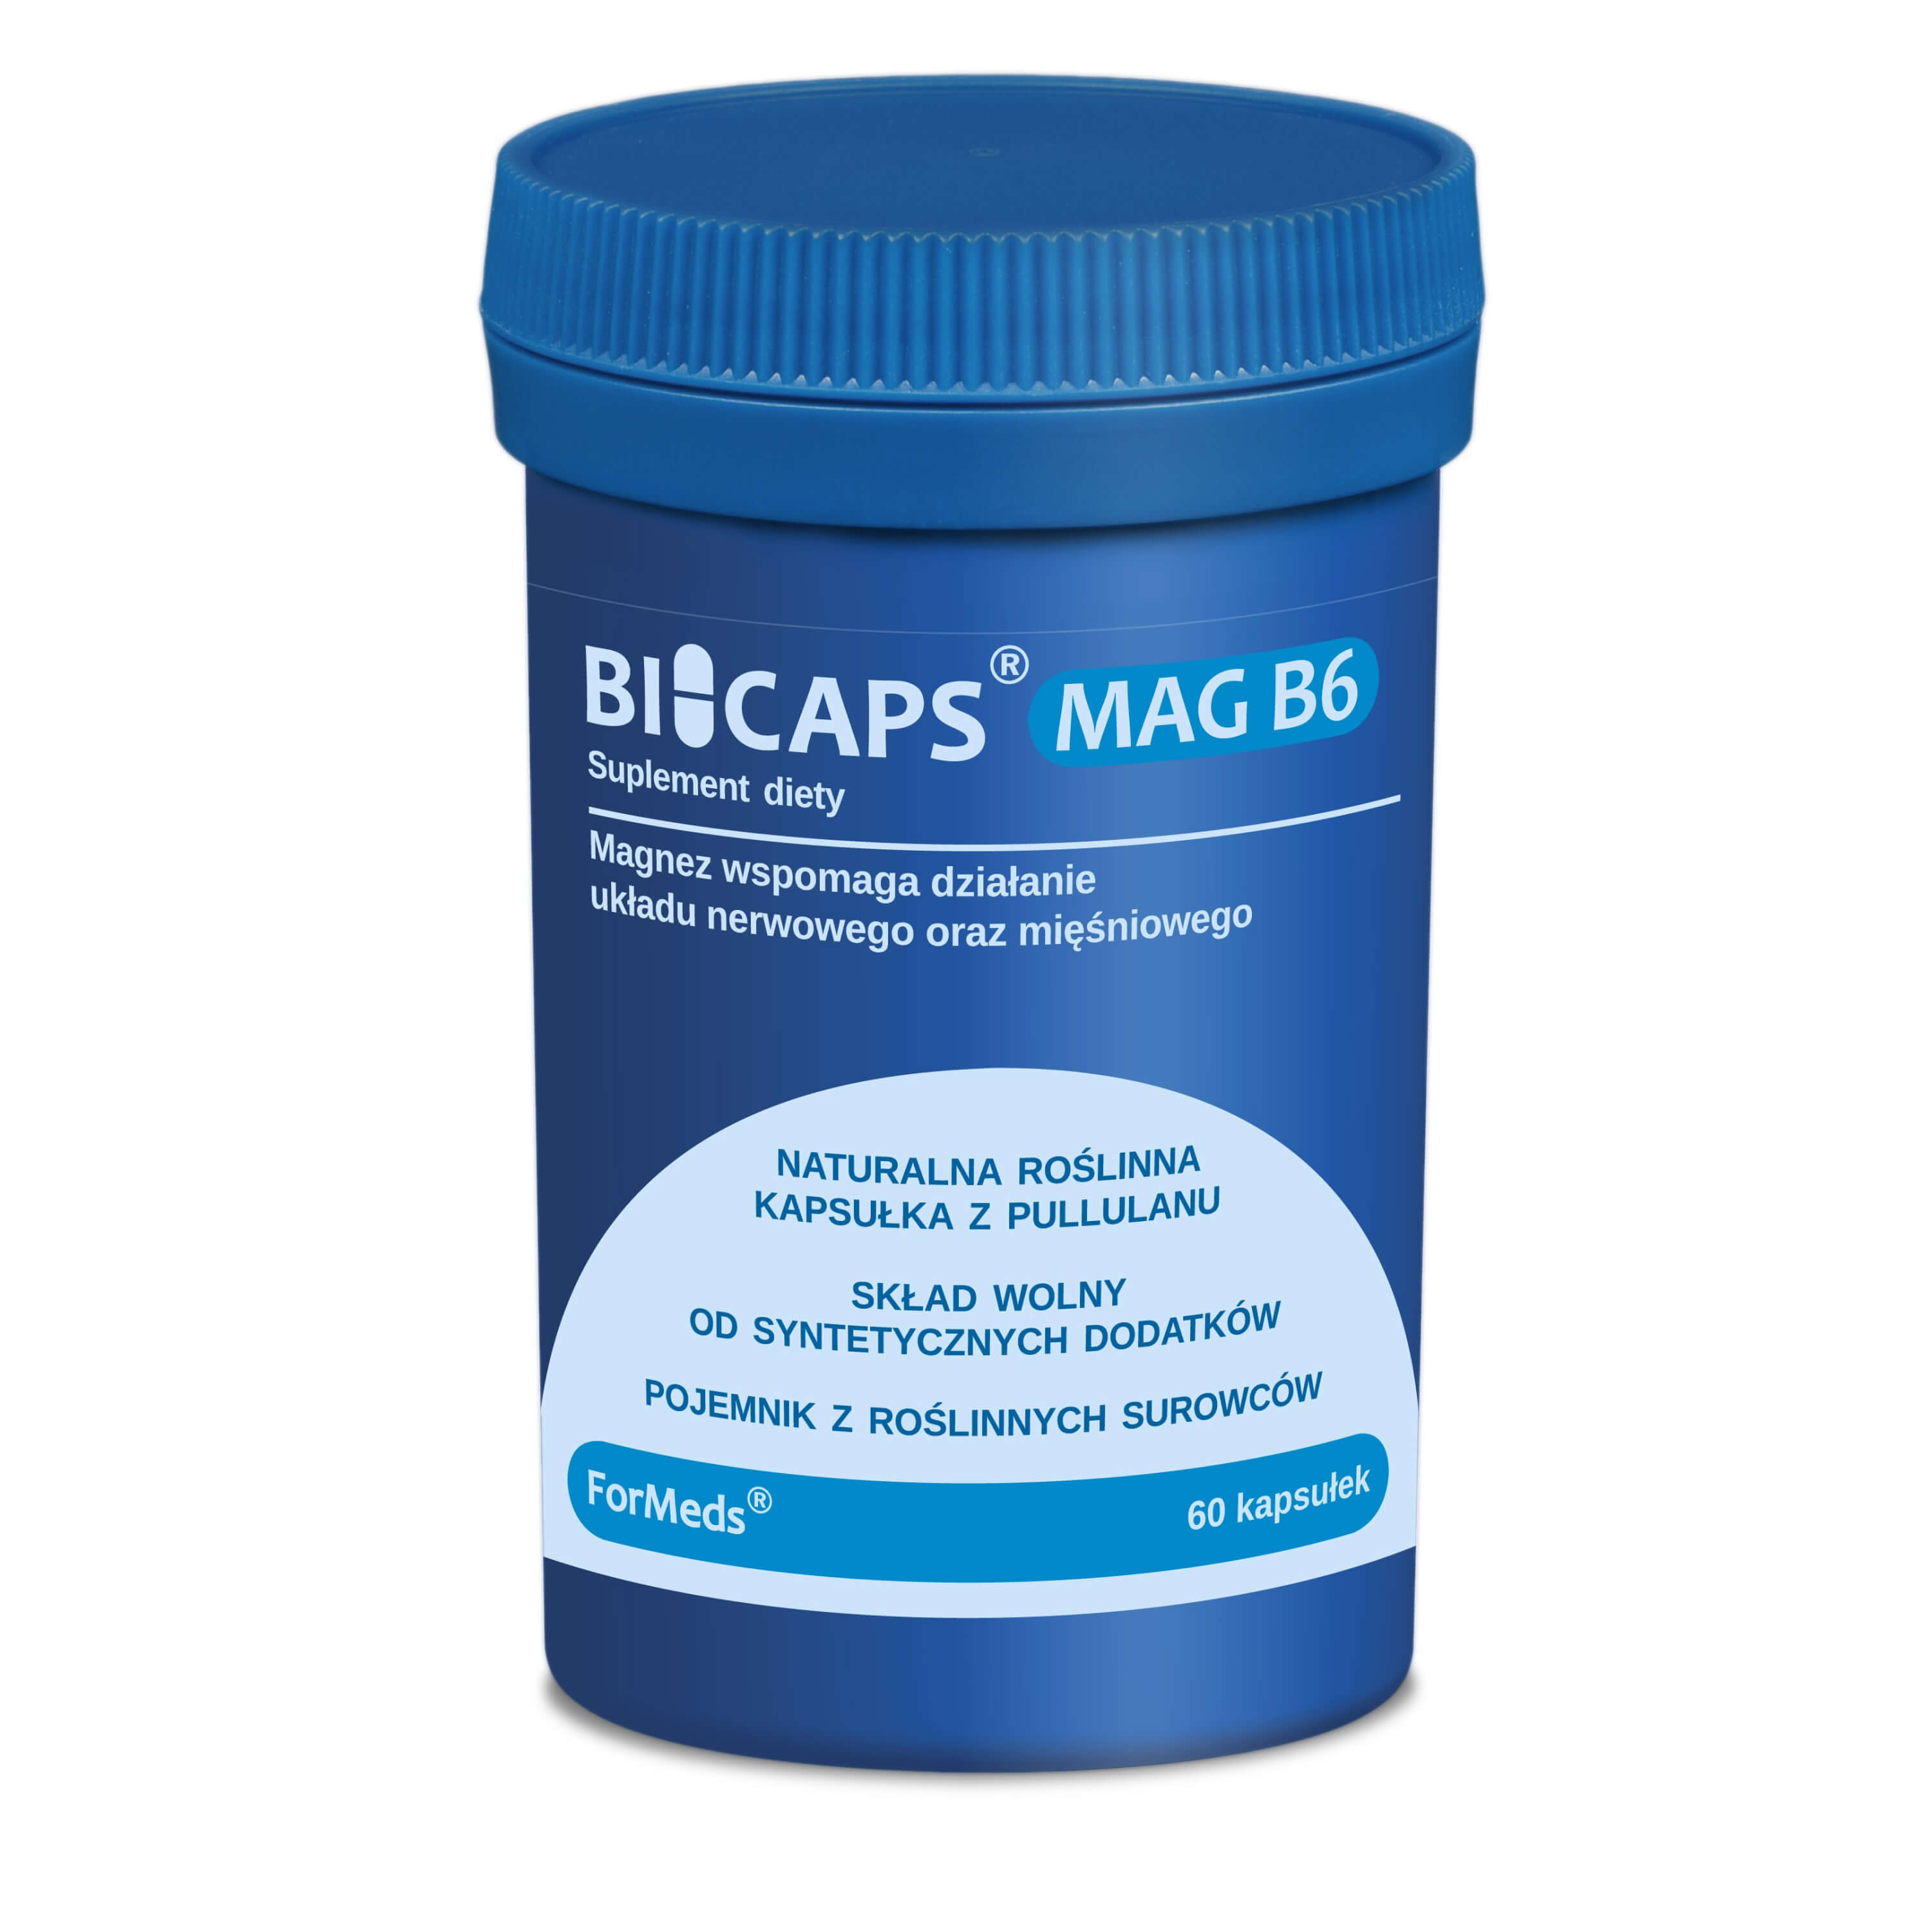 BICAPS MAG B6 Magnez i witamina B6 60 kapsułek - ForMeds